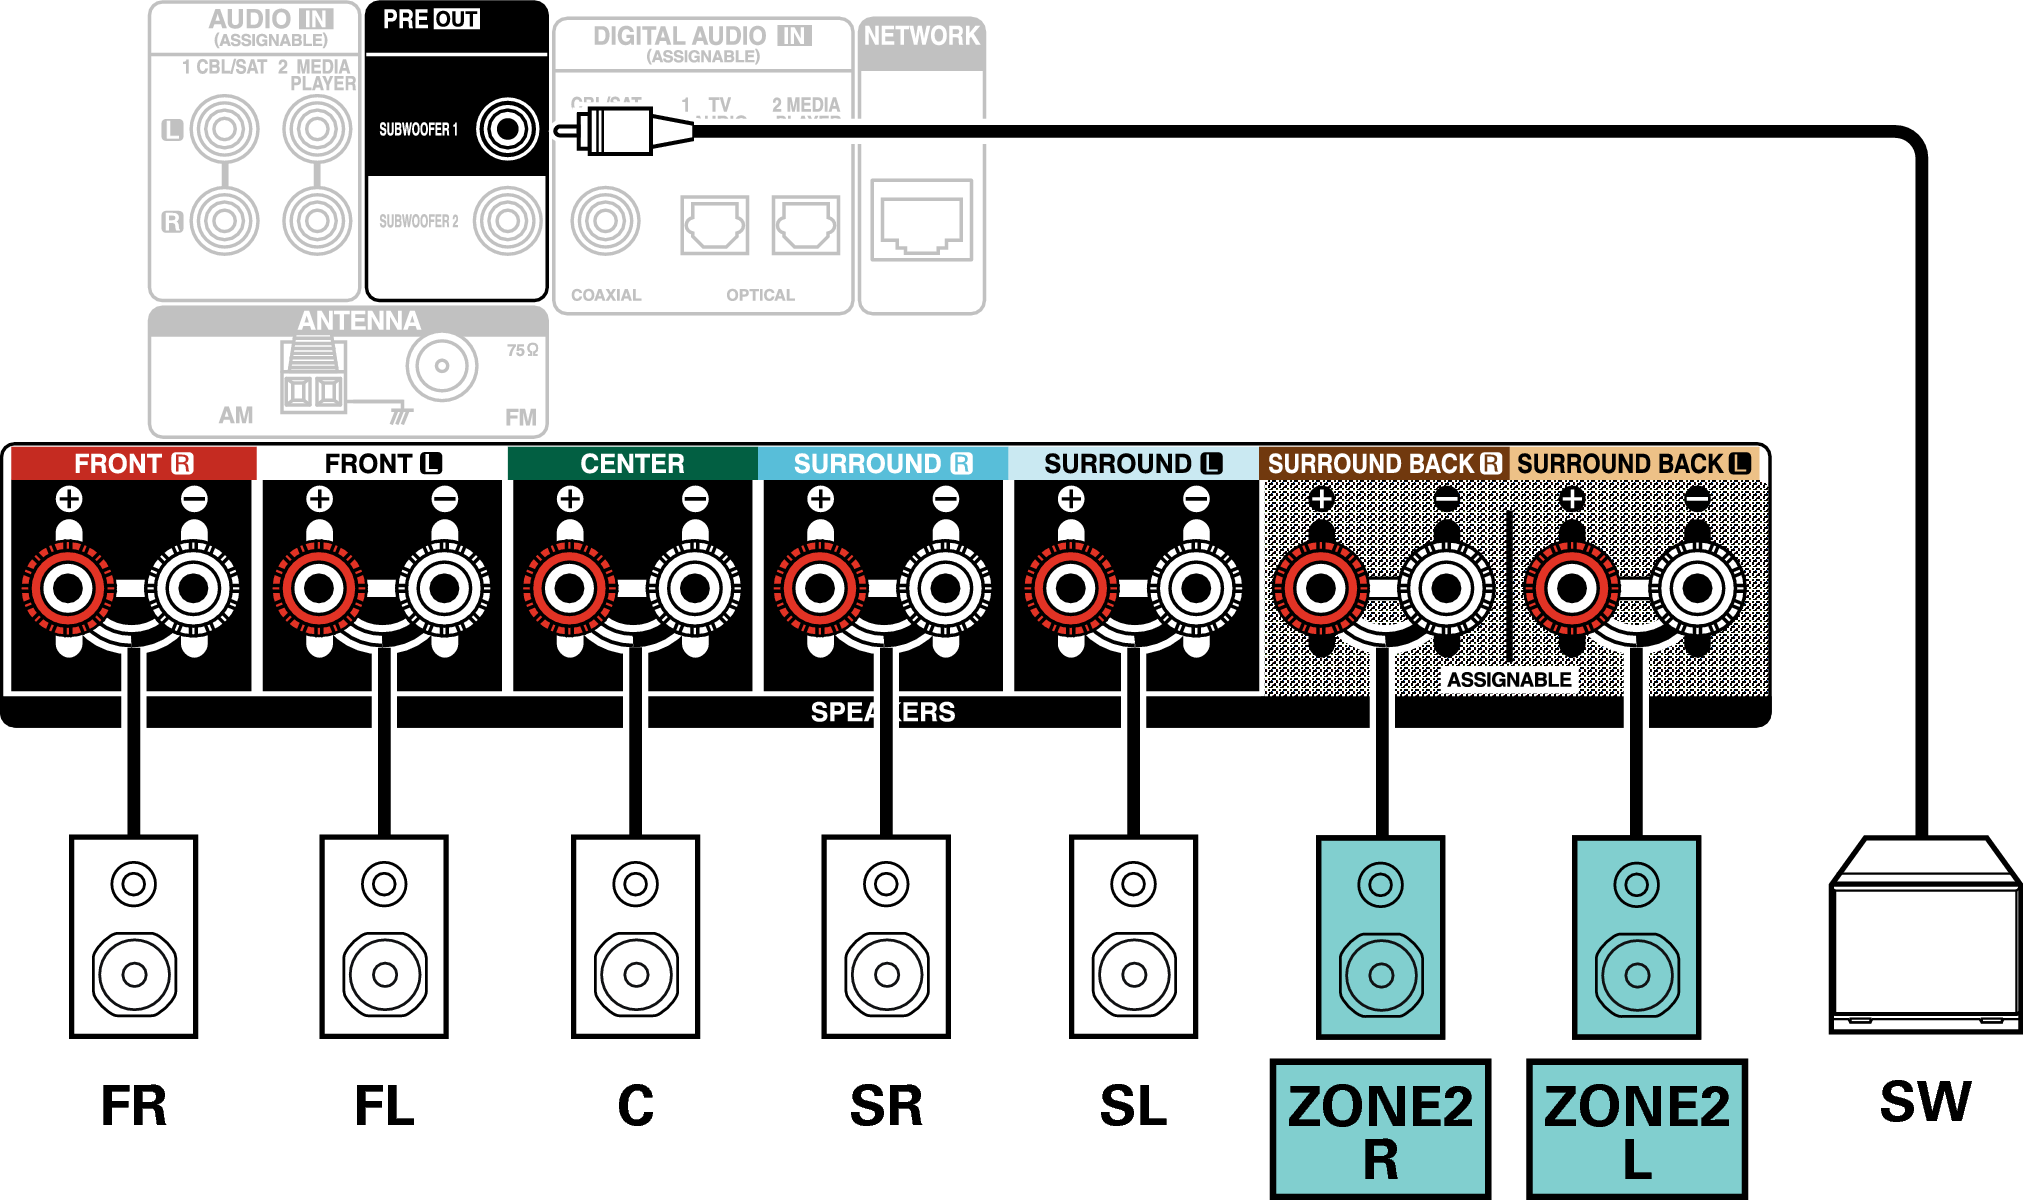 Conne SP 5.1 ZONE2 S77E3